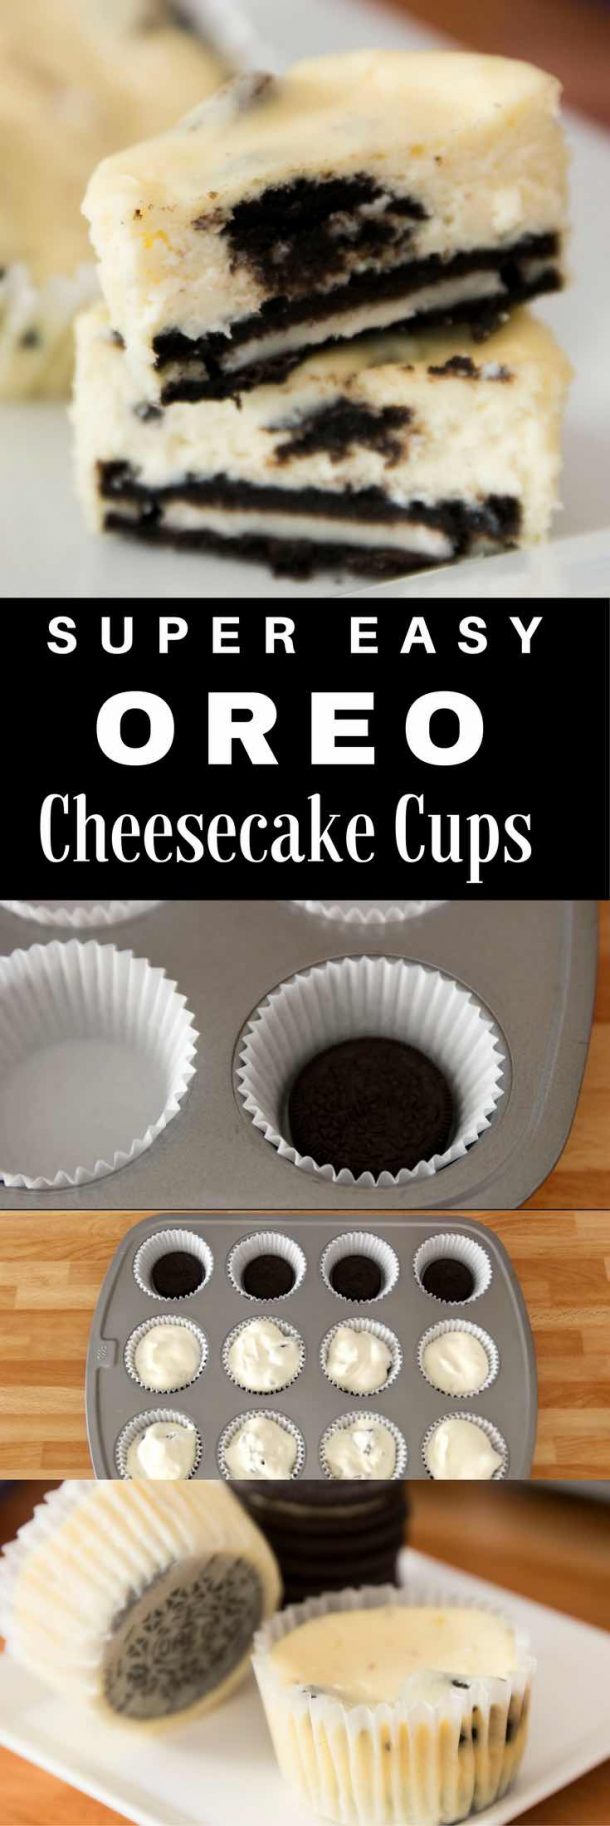 Mini Oreo Cheesecake Cupcakes - TipBuzz